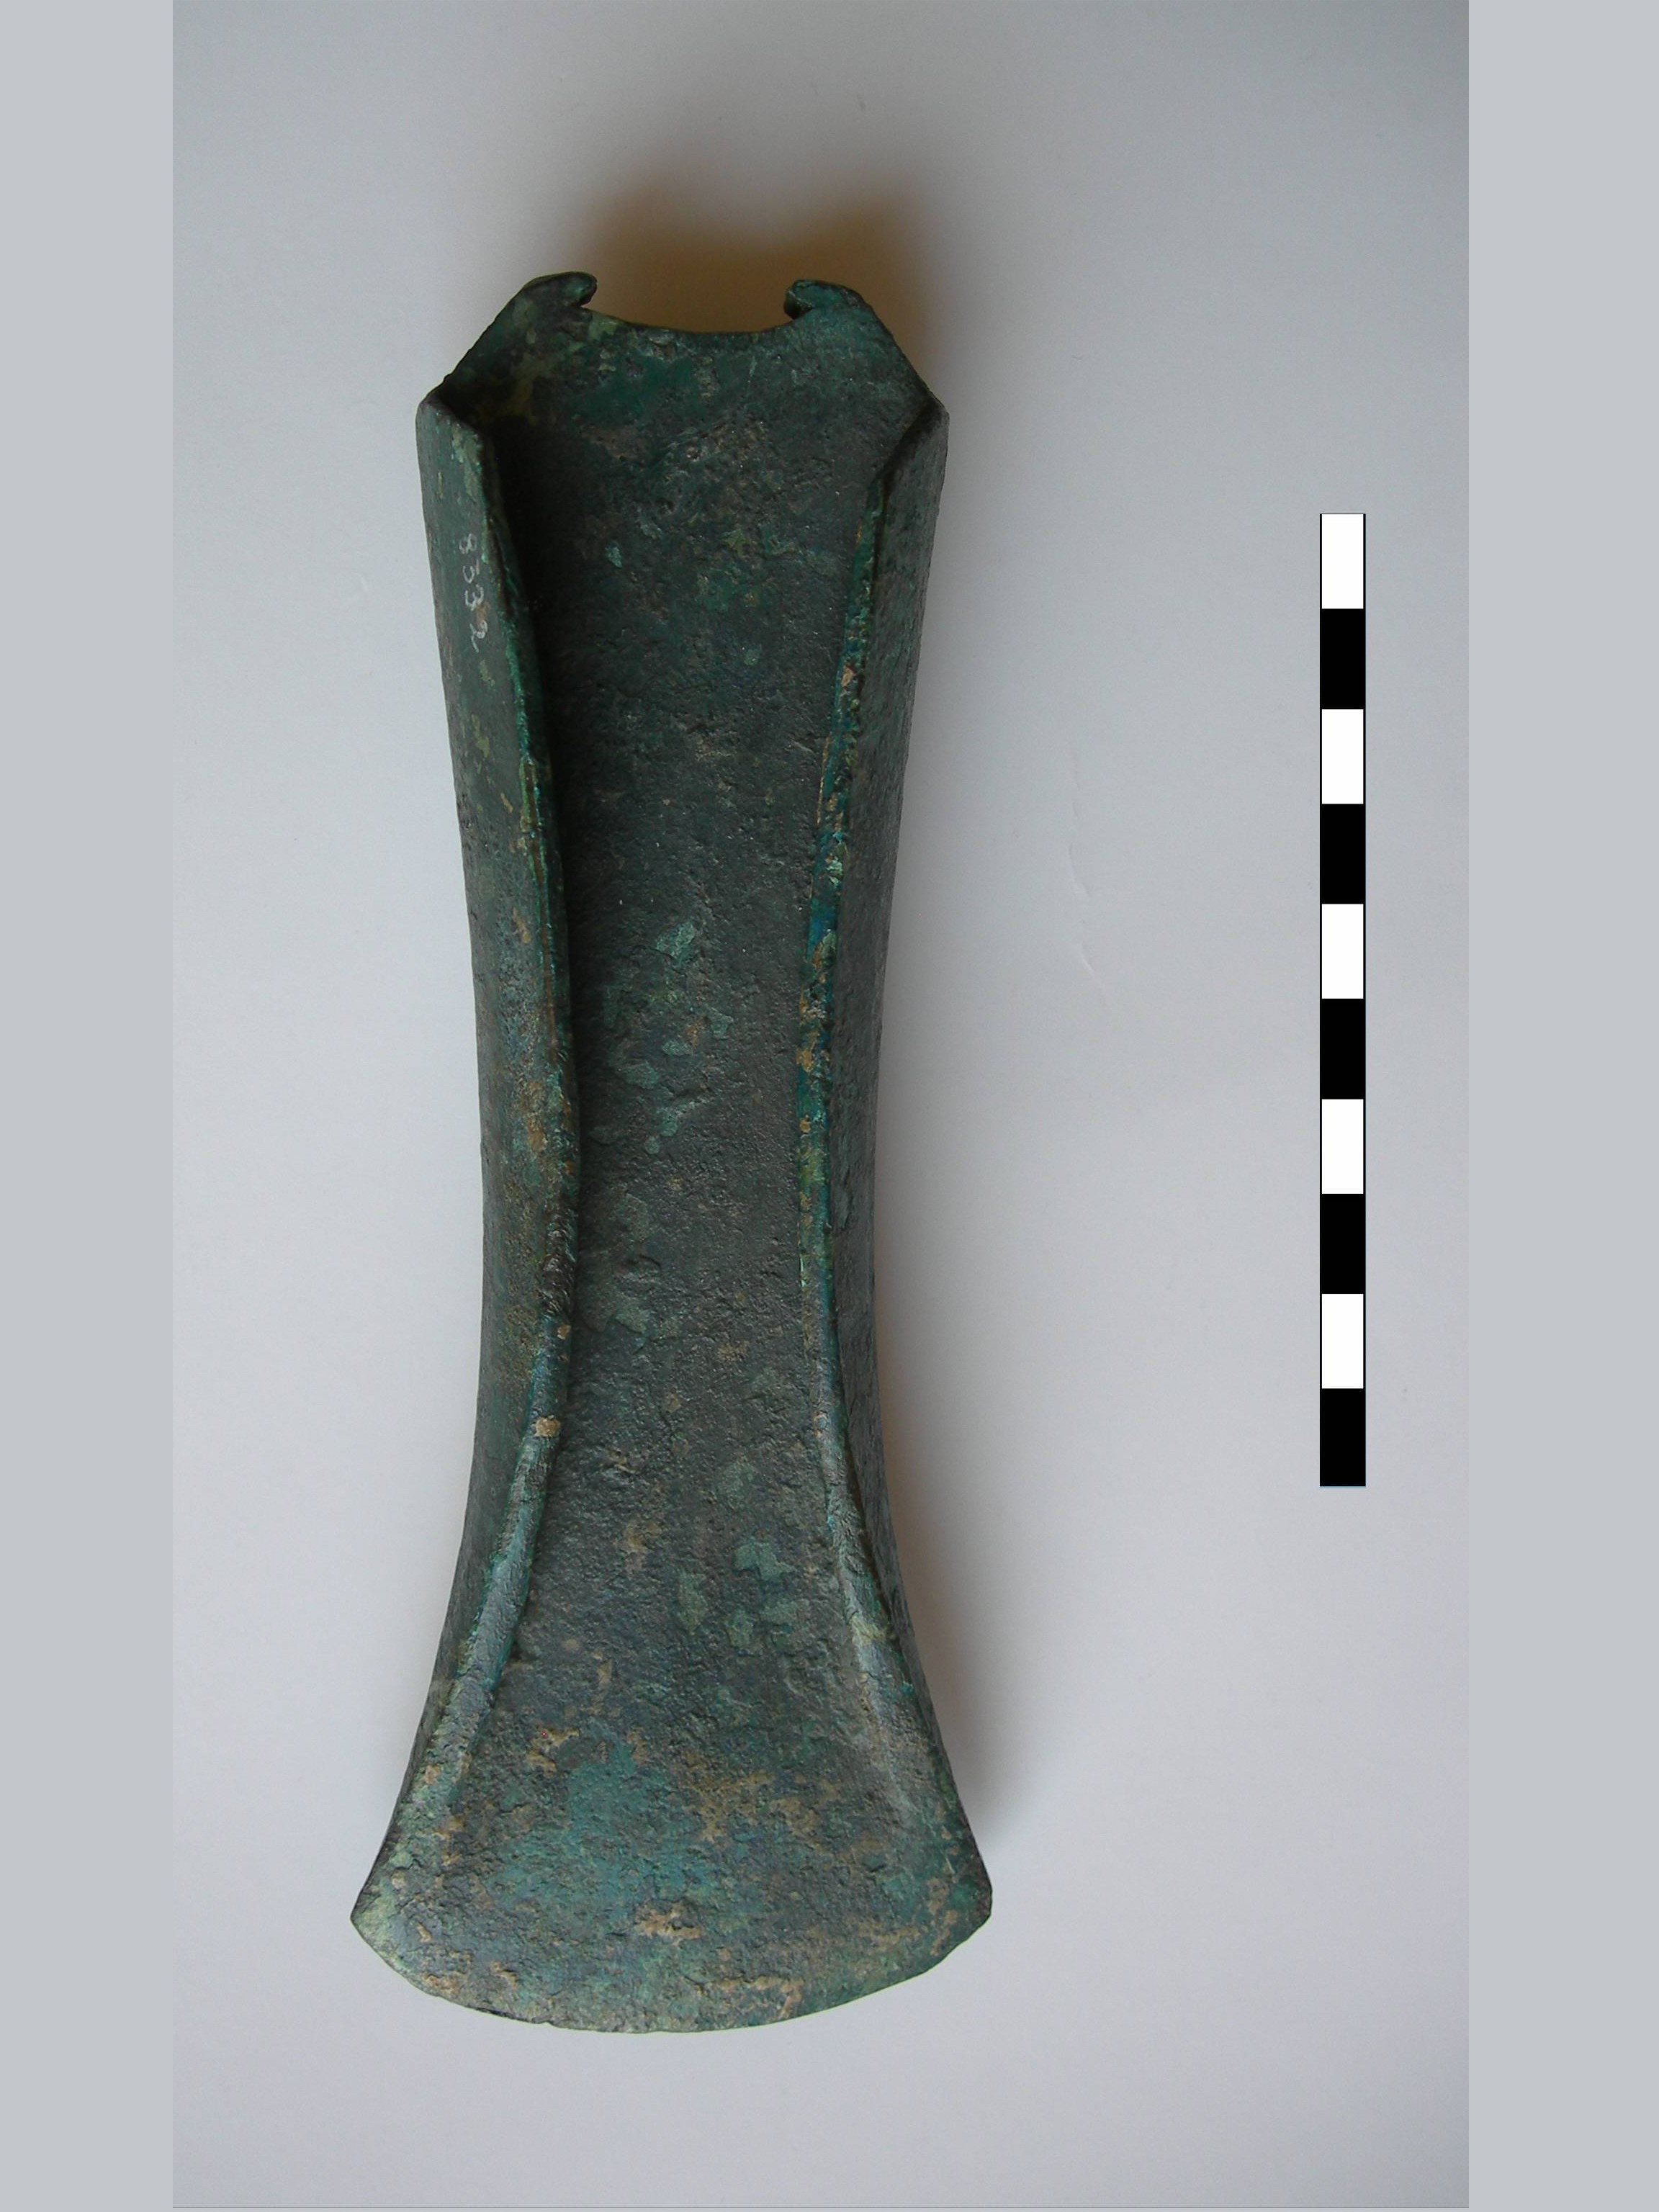 ascia, ascia a margini rialzati (bronzo antico)